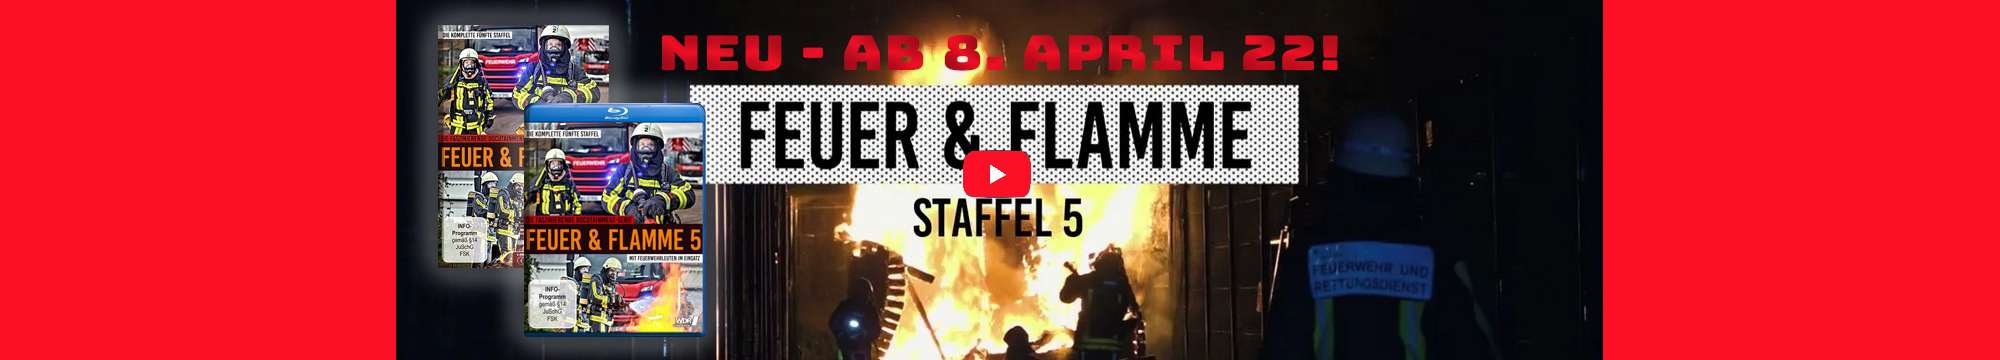 FEUER & FLAMME – Staffel 5  ab 8. April als DVD, Blu-ray und digital erhältlich